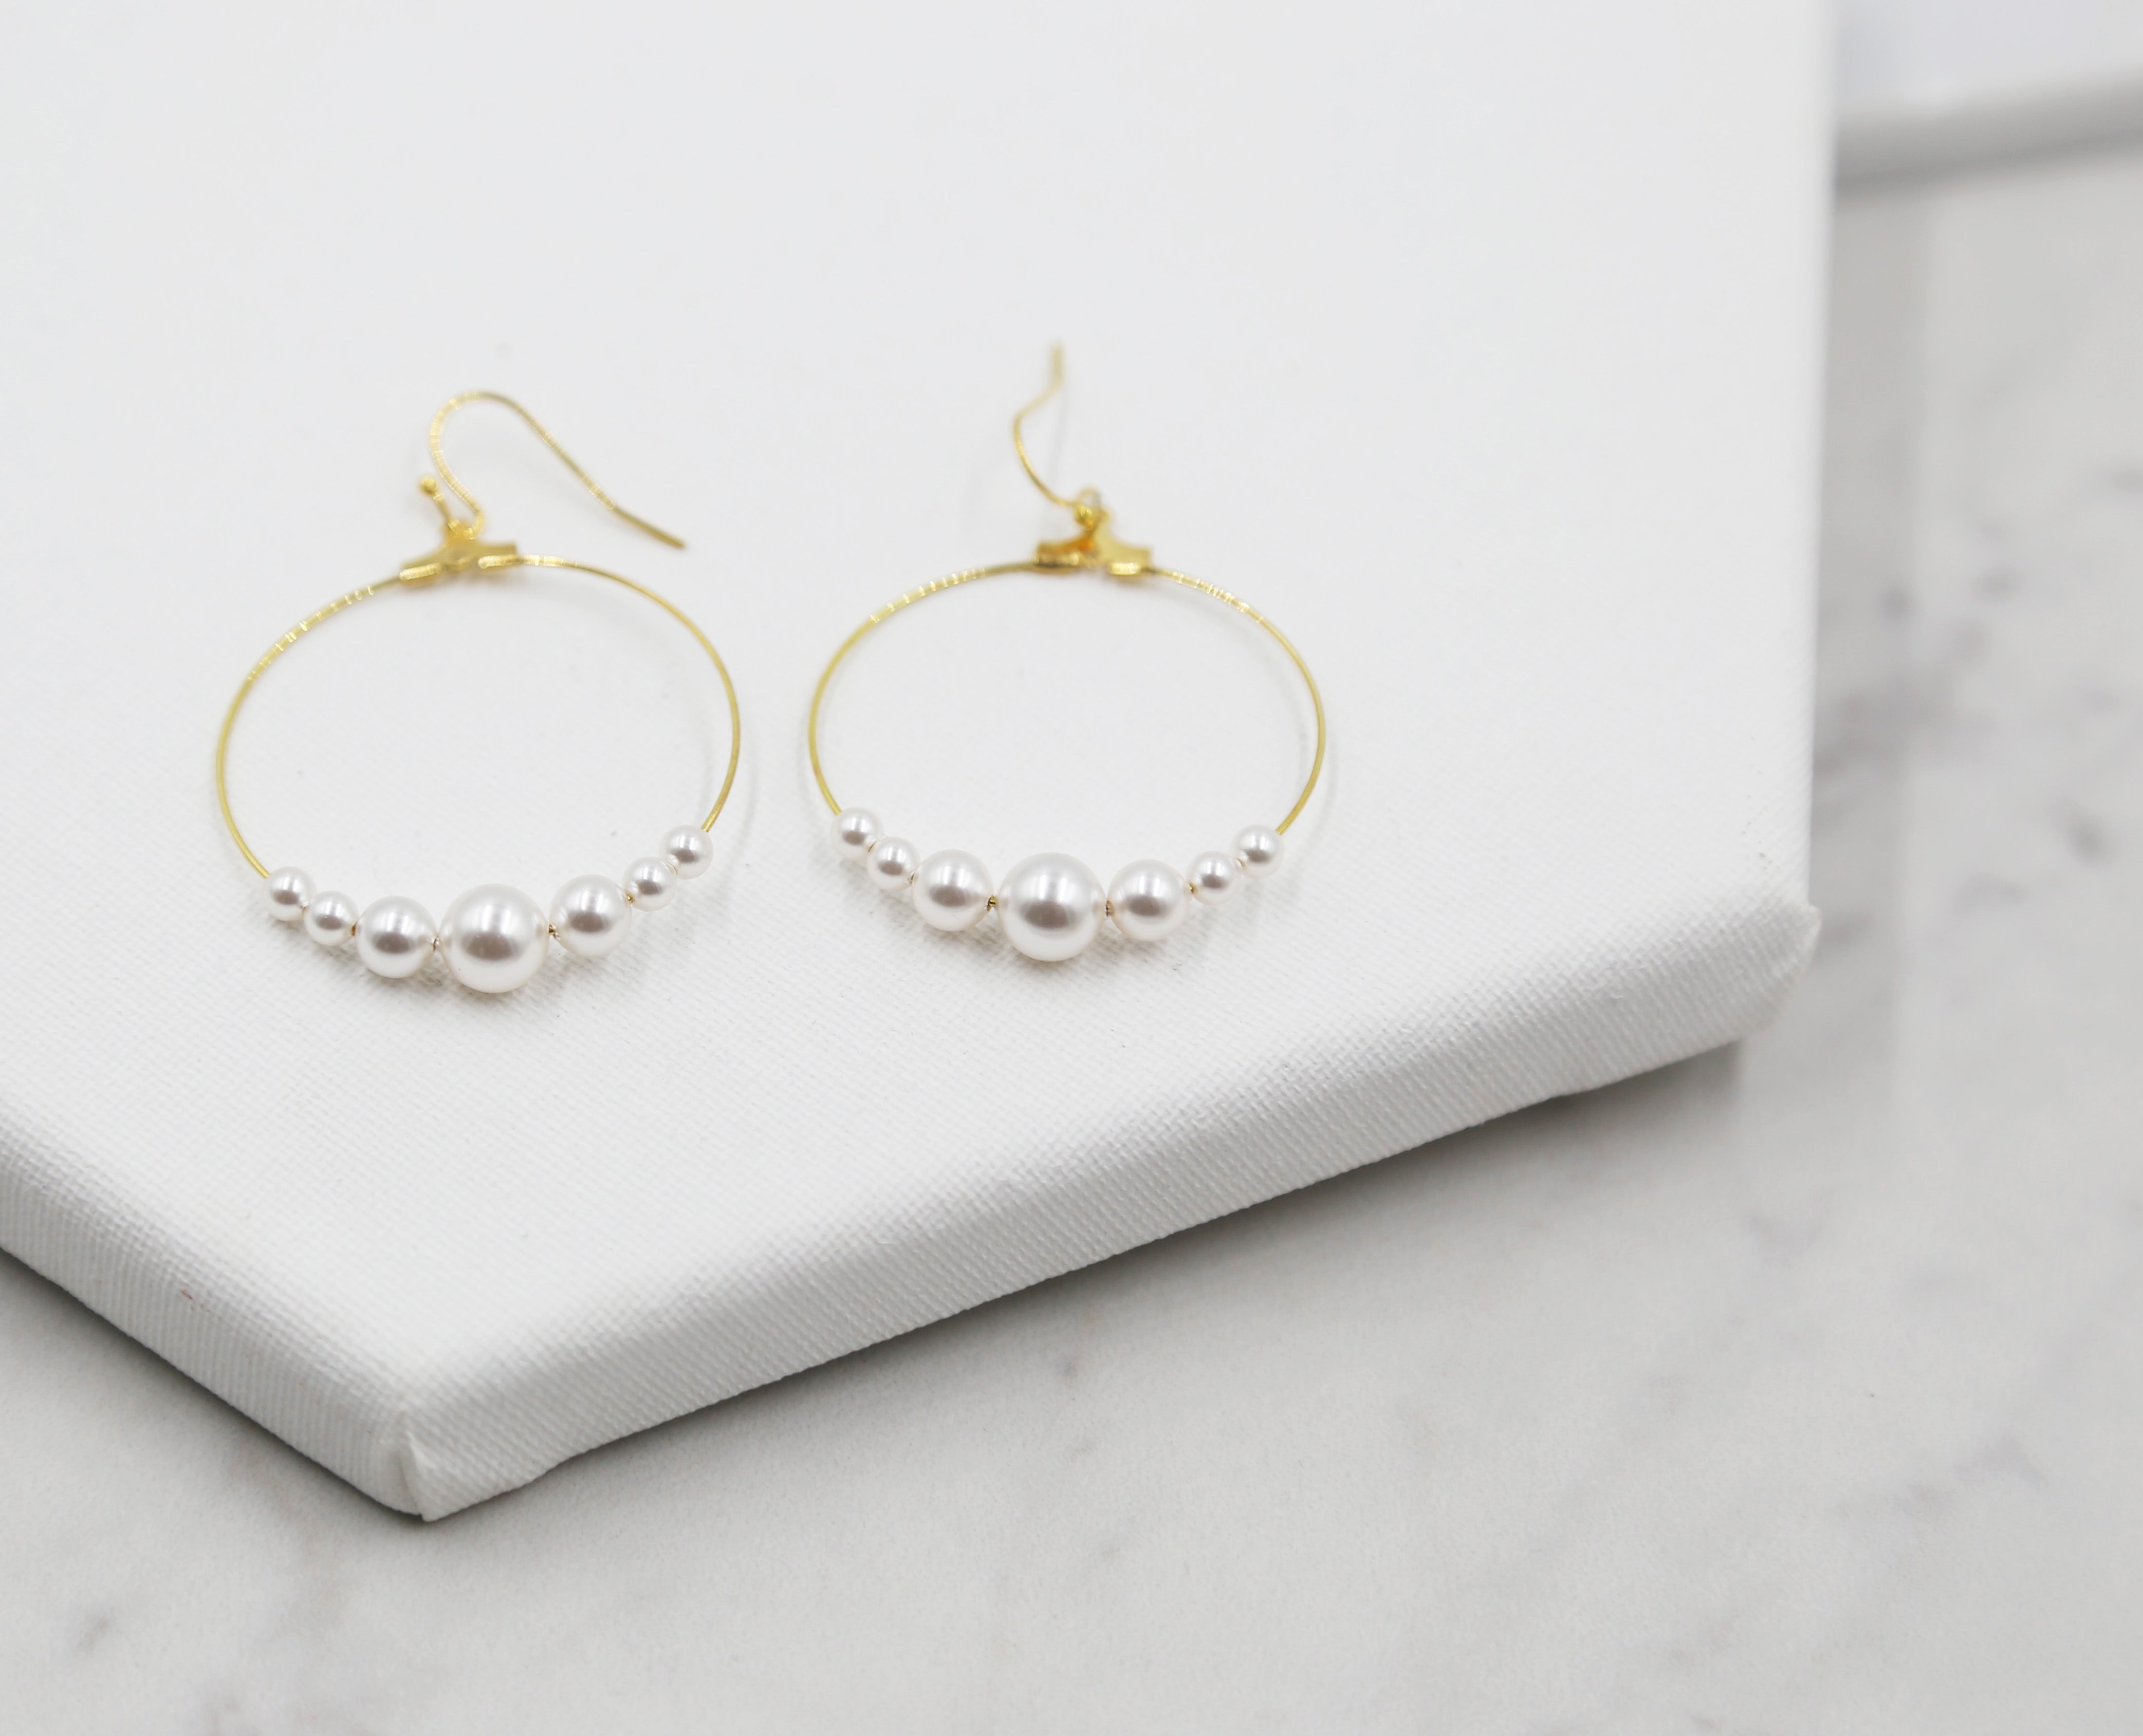 Large Pearl Hoop Earrings, gold hoops, swarovski pearls, bridal earrings, wedding, beaded earrings, classic, big hoop earrings, white pearls